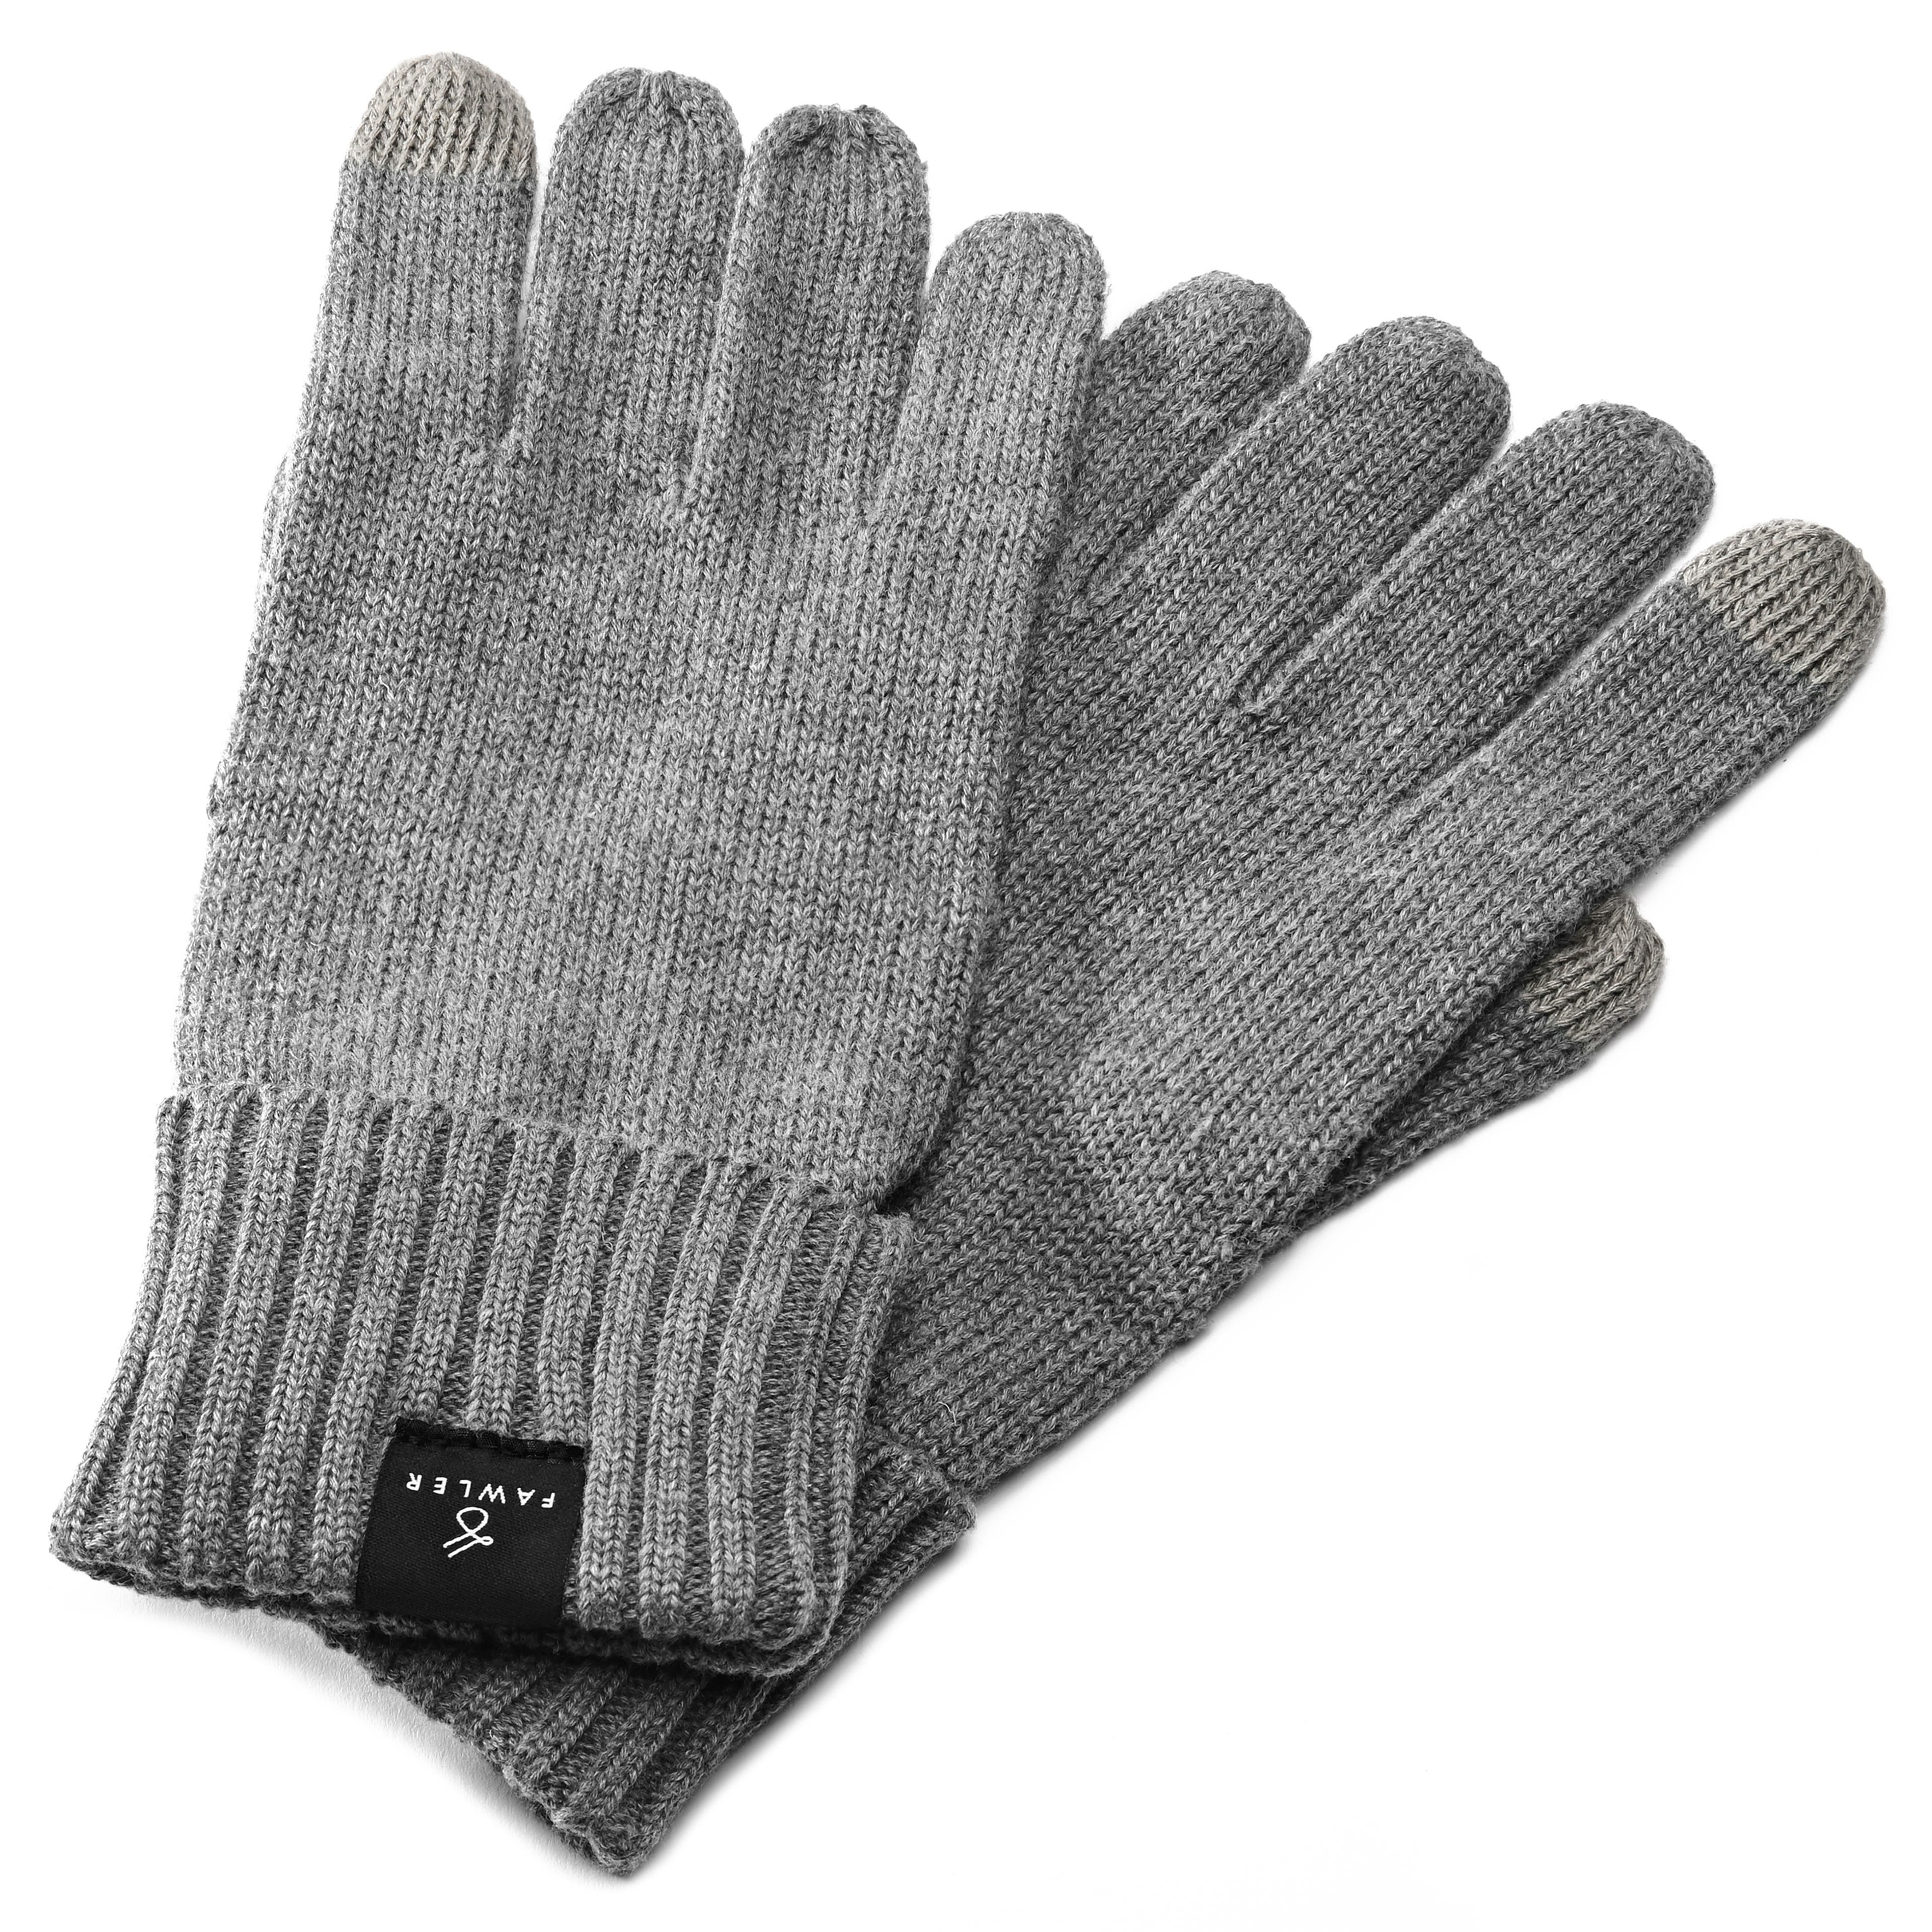 Dark Grey Knitted Cotton Gloves